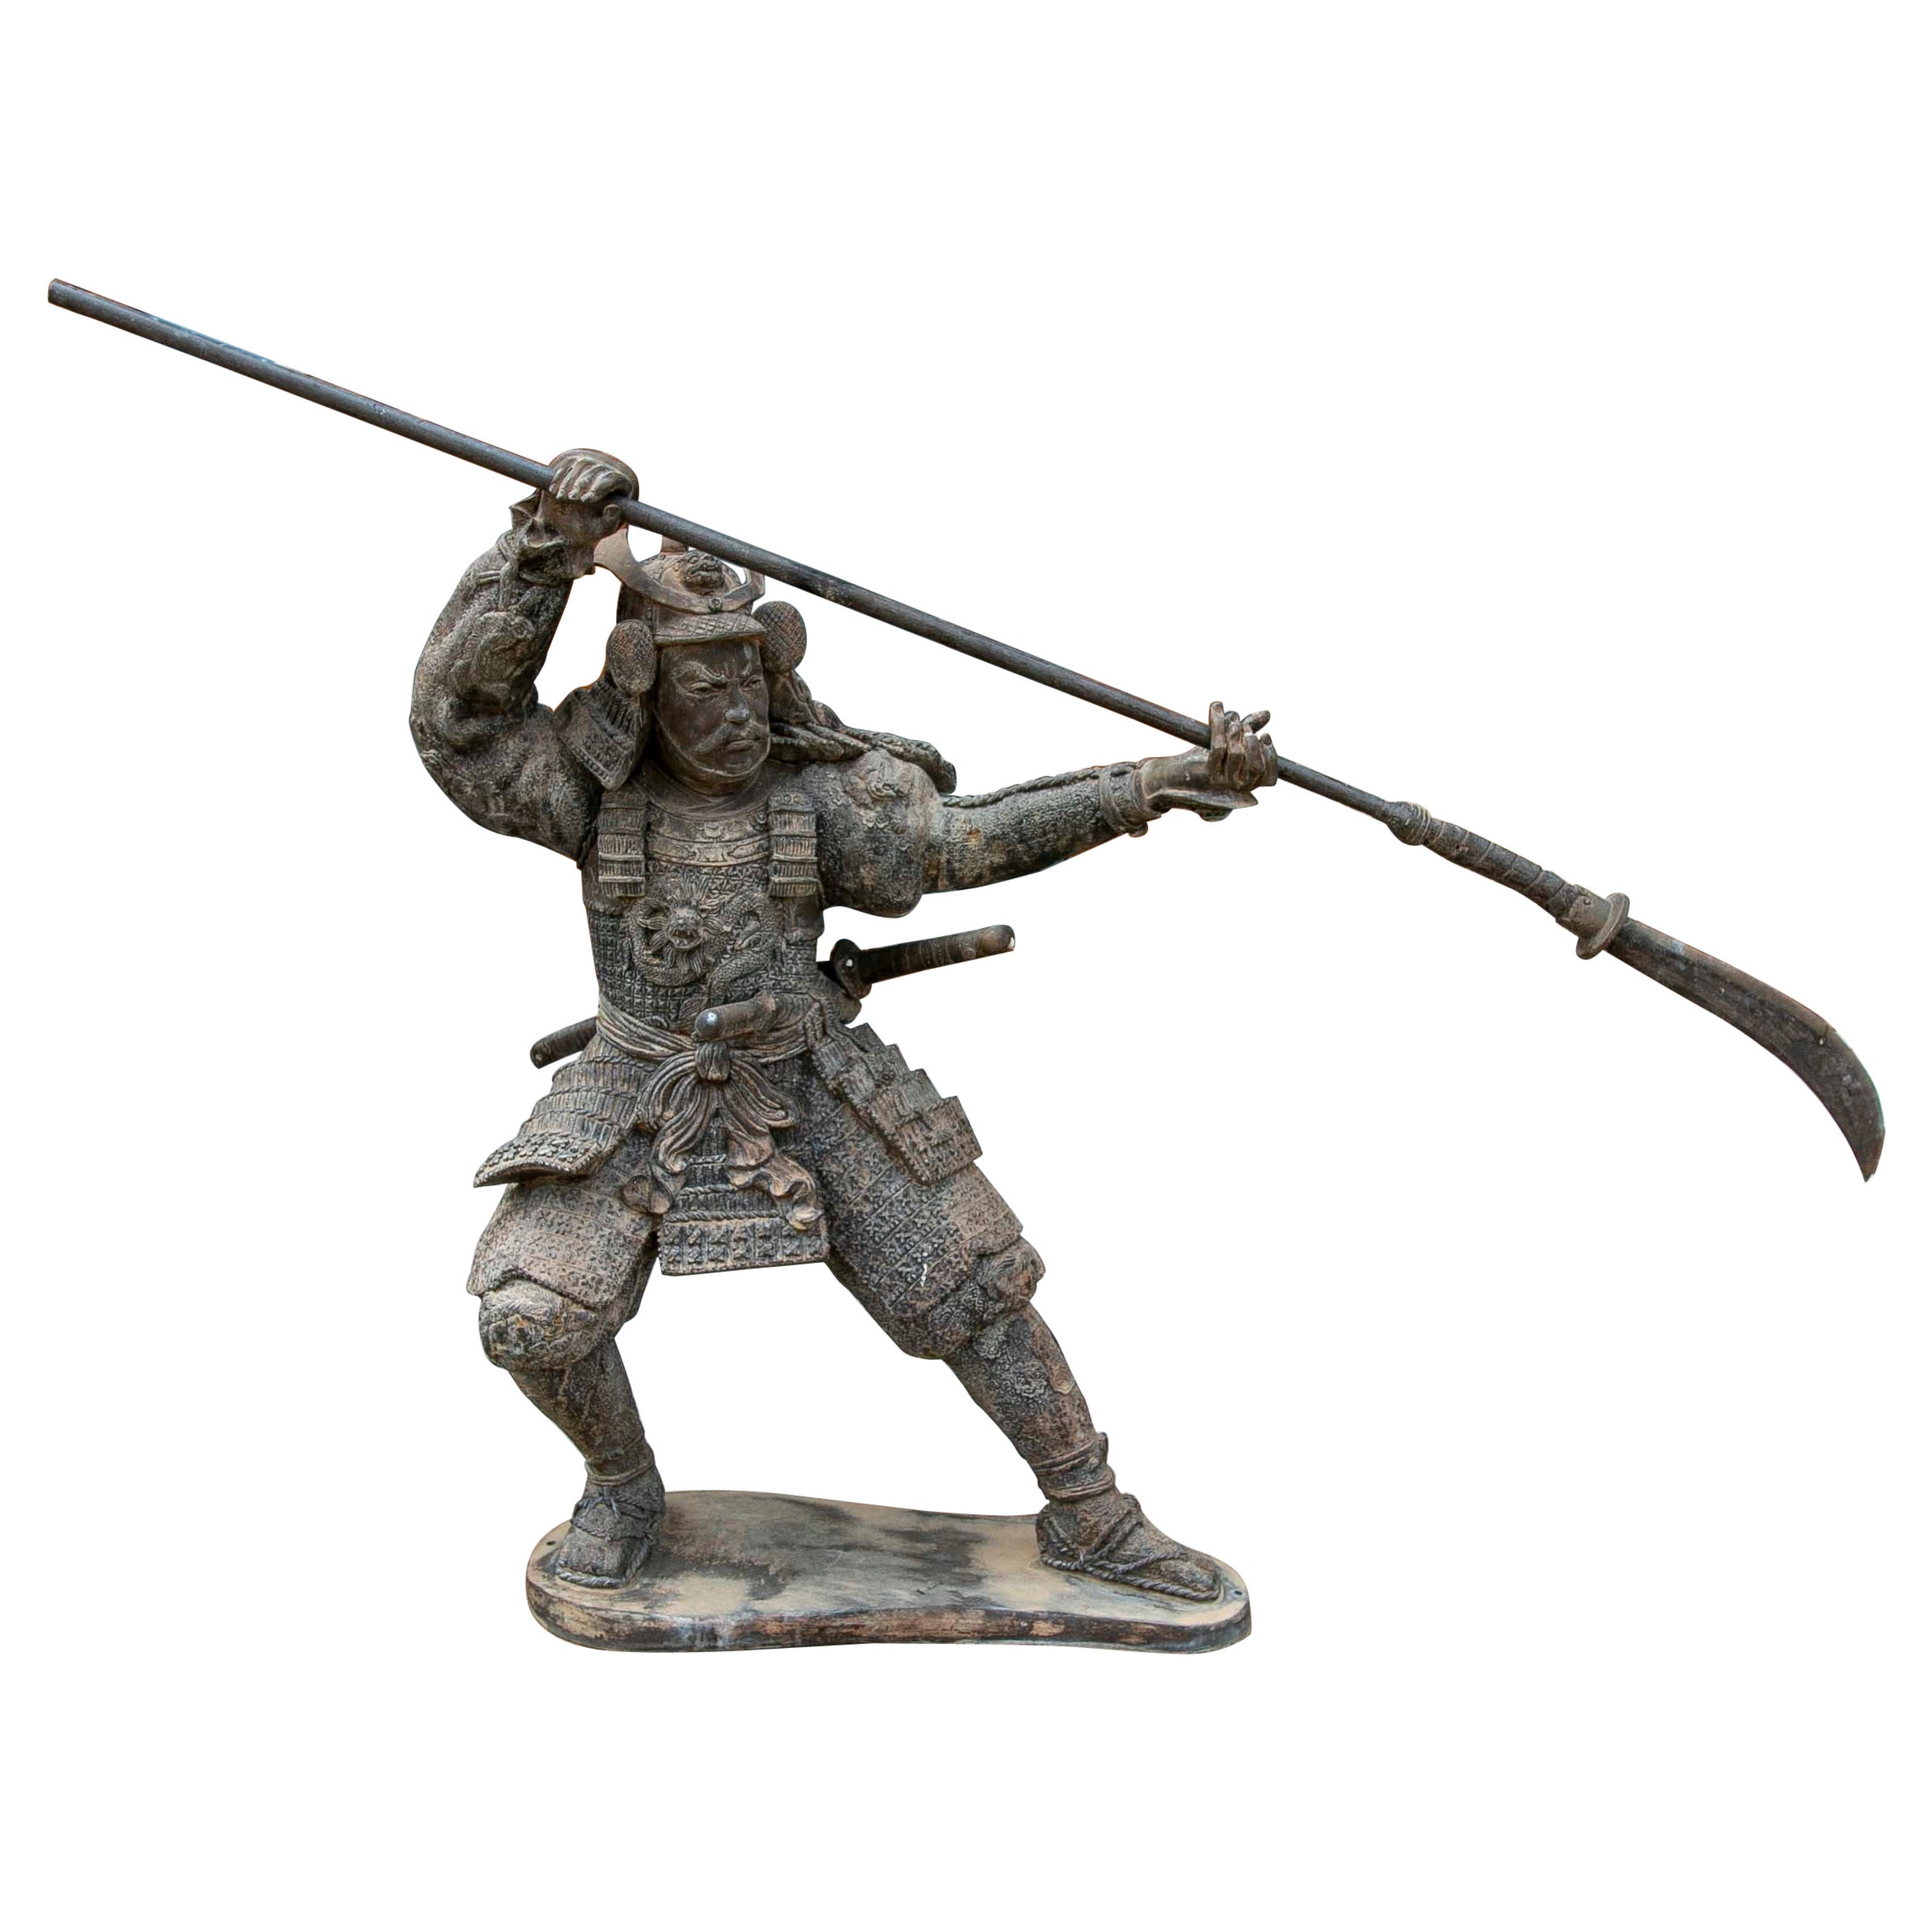 Bronzeskulptur eines Samurai mit Speer in Angriffsposition